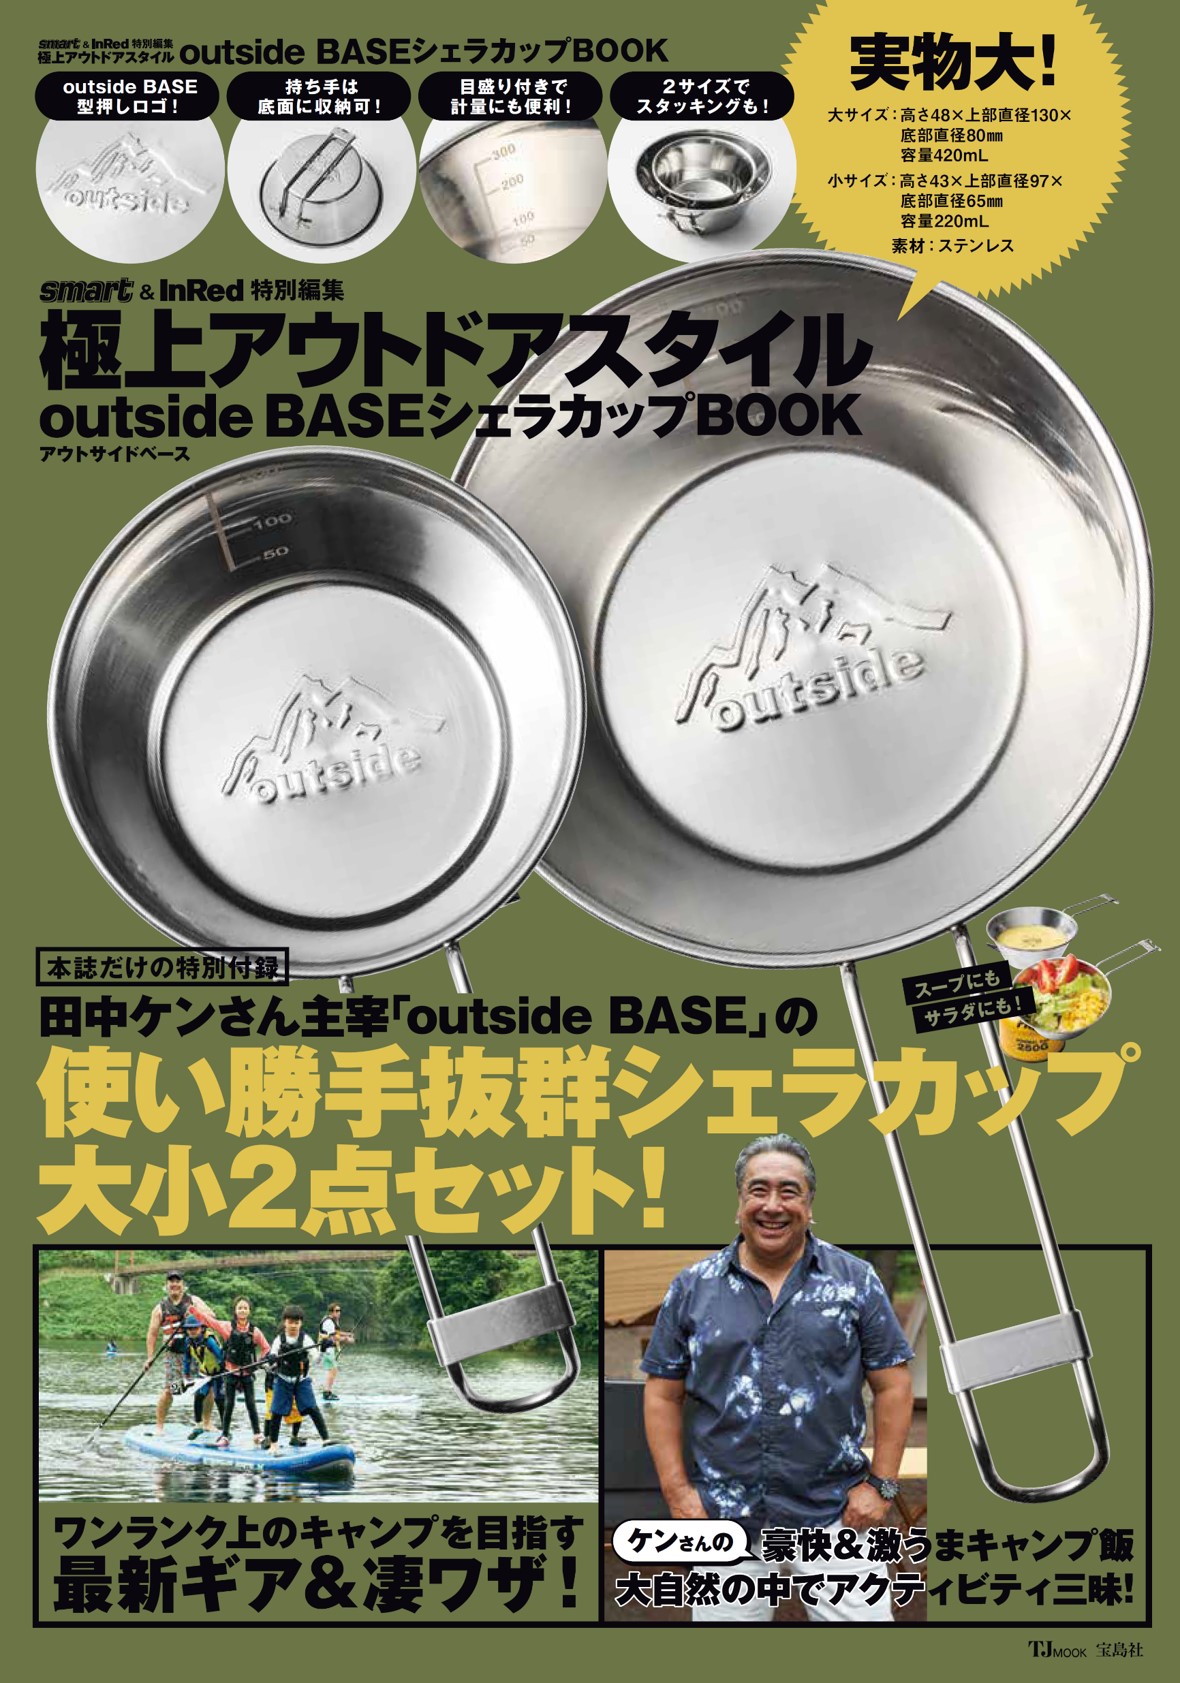 【8月24日発売】田中ケンoutside BASEロゴ入りシェラカップ2個セットのアウトドア雑誌